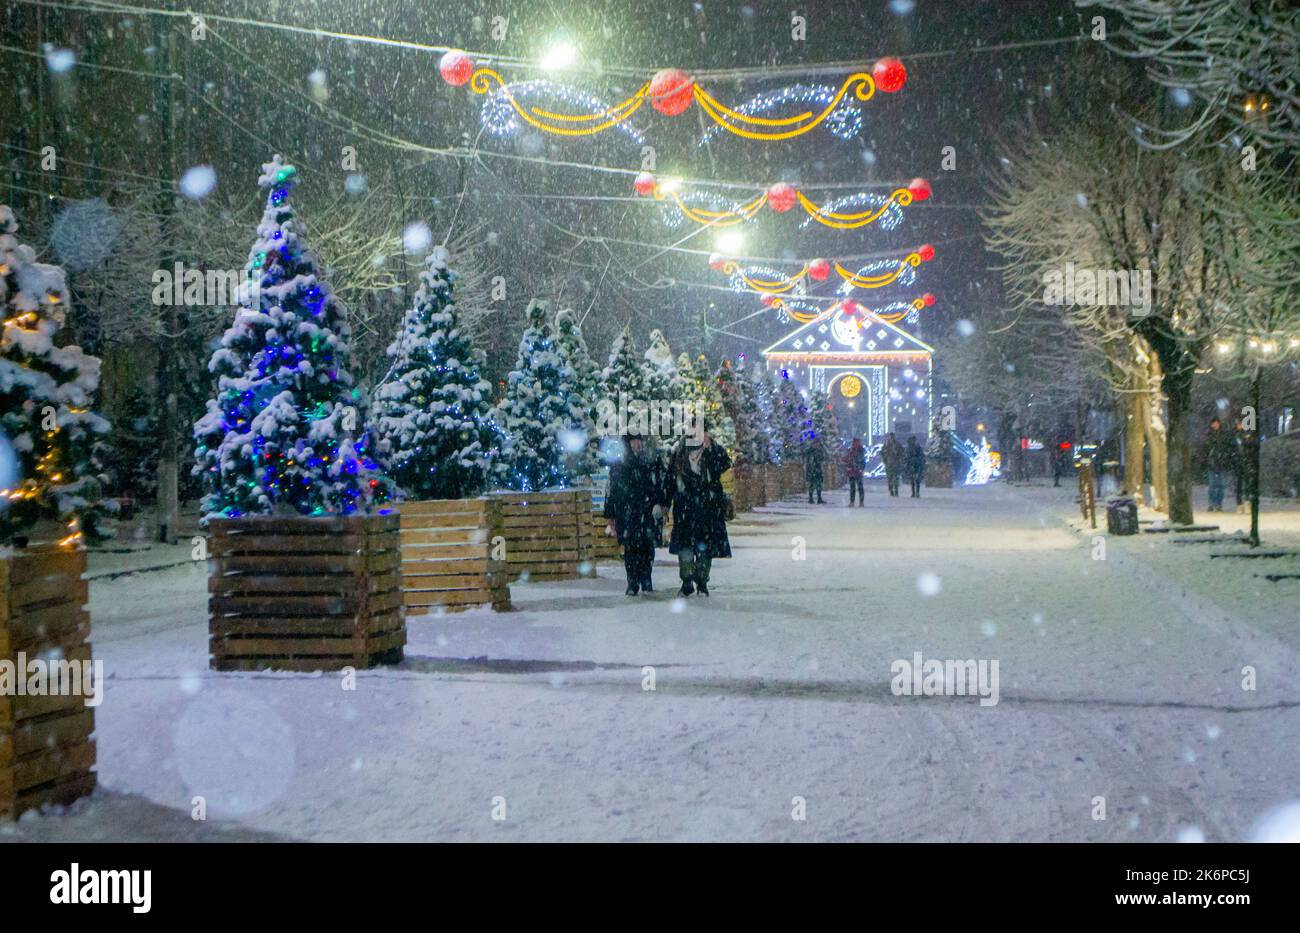 Rue de ville enneigée avec arbres de Noël et décoration illuminée pendant la neige la nuit d'hiver. Les gens marchent dans la rue. Résumé Noël nouvel an et fond d'hiver. Banque D'Images